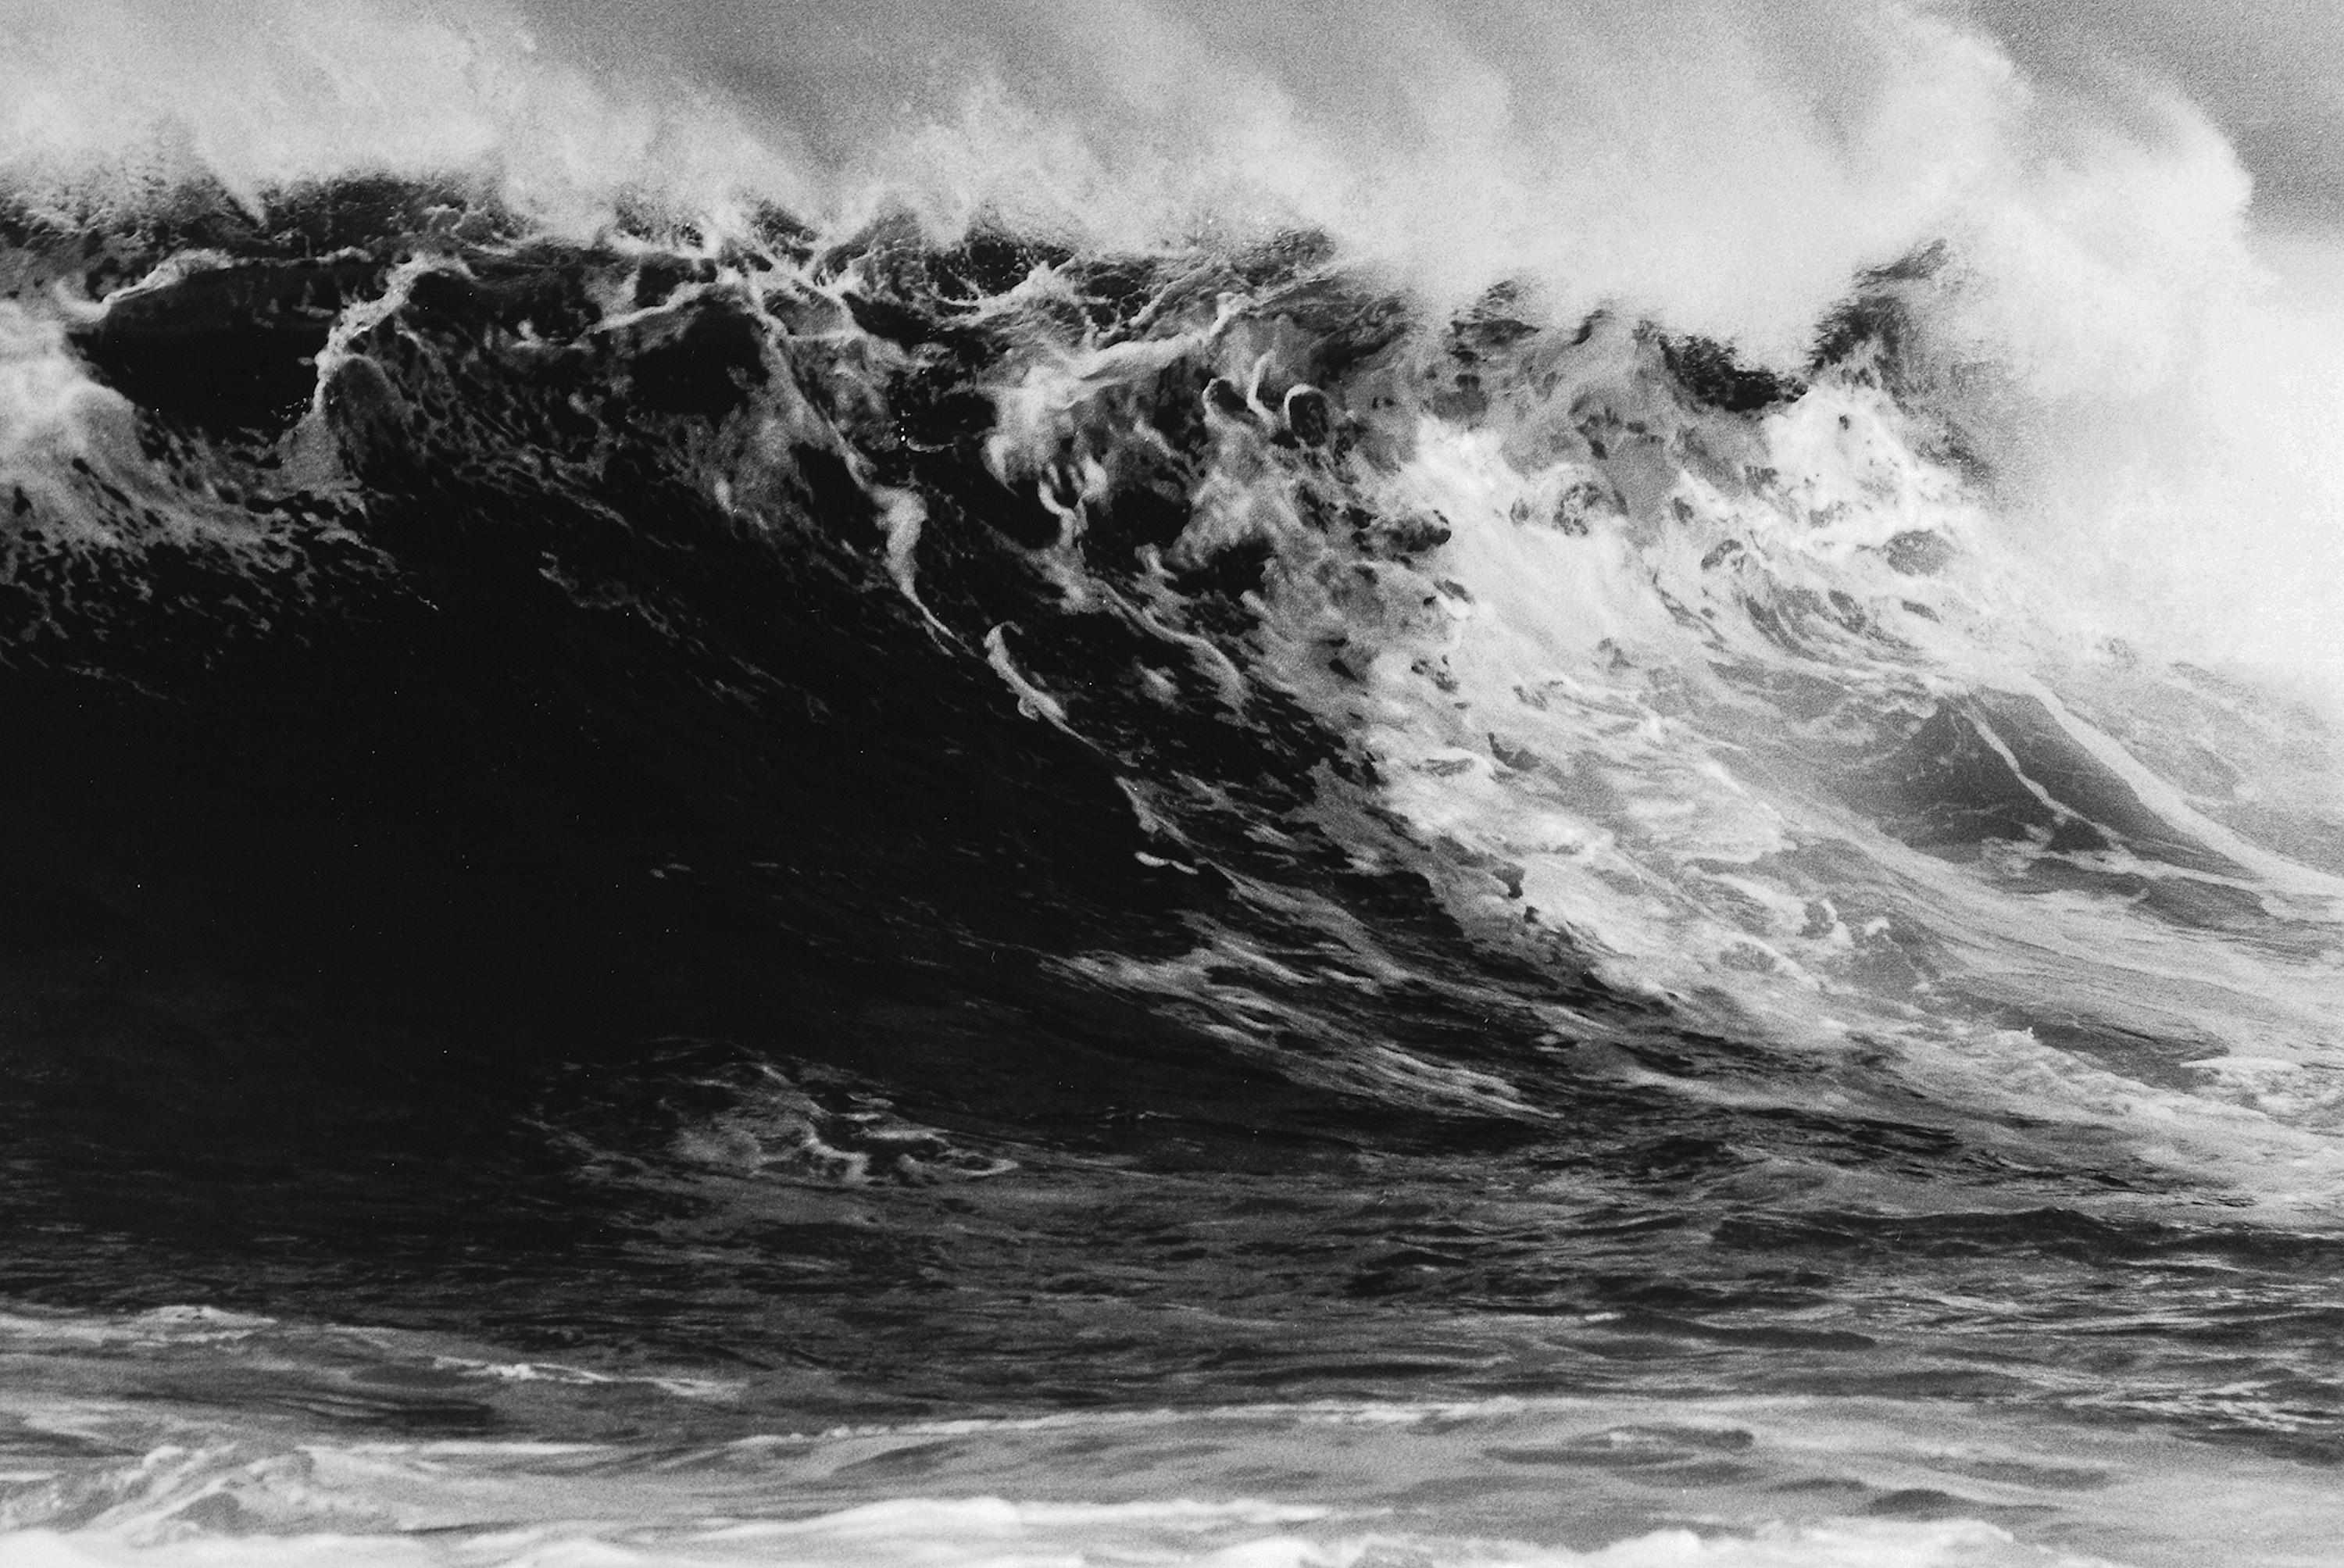 Palomino Wave, Carmel, Kalifornien, U.S.A. Anthony Friedkin, Ozean, Wasser, Welle